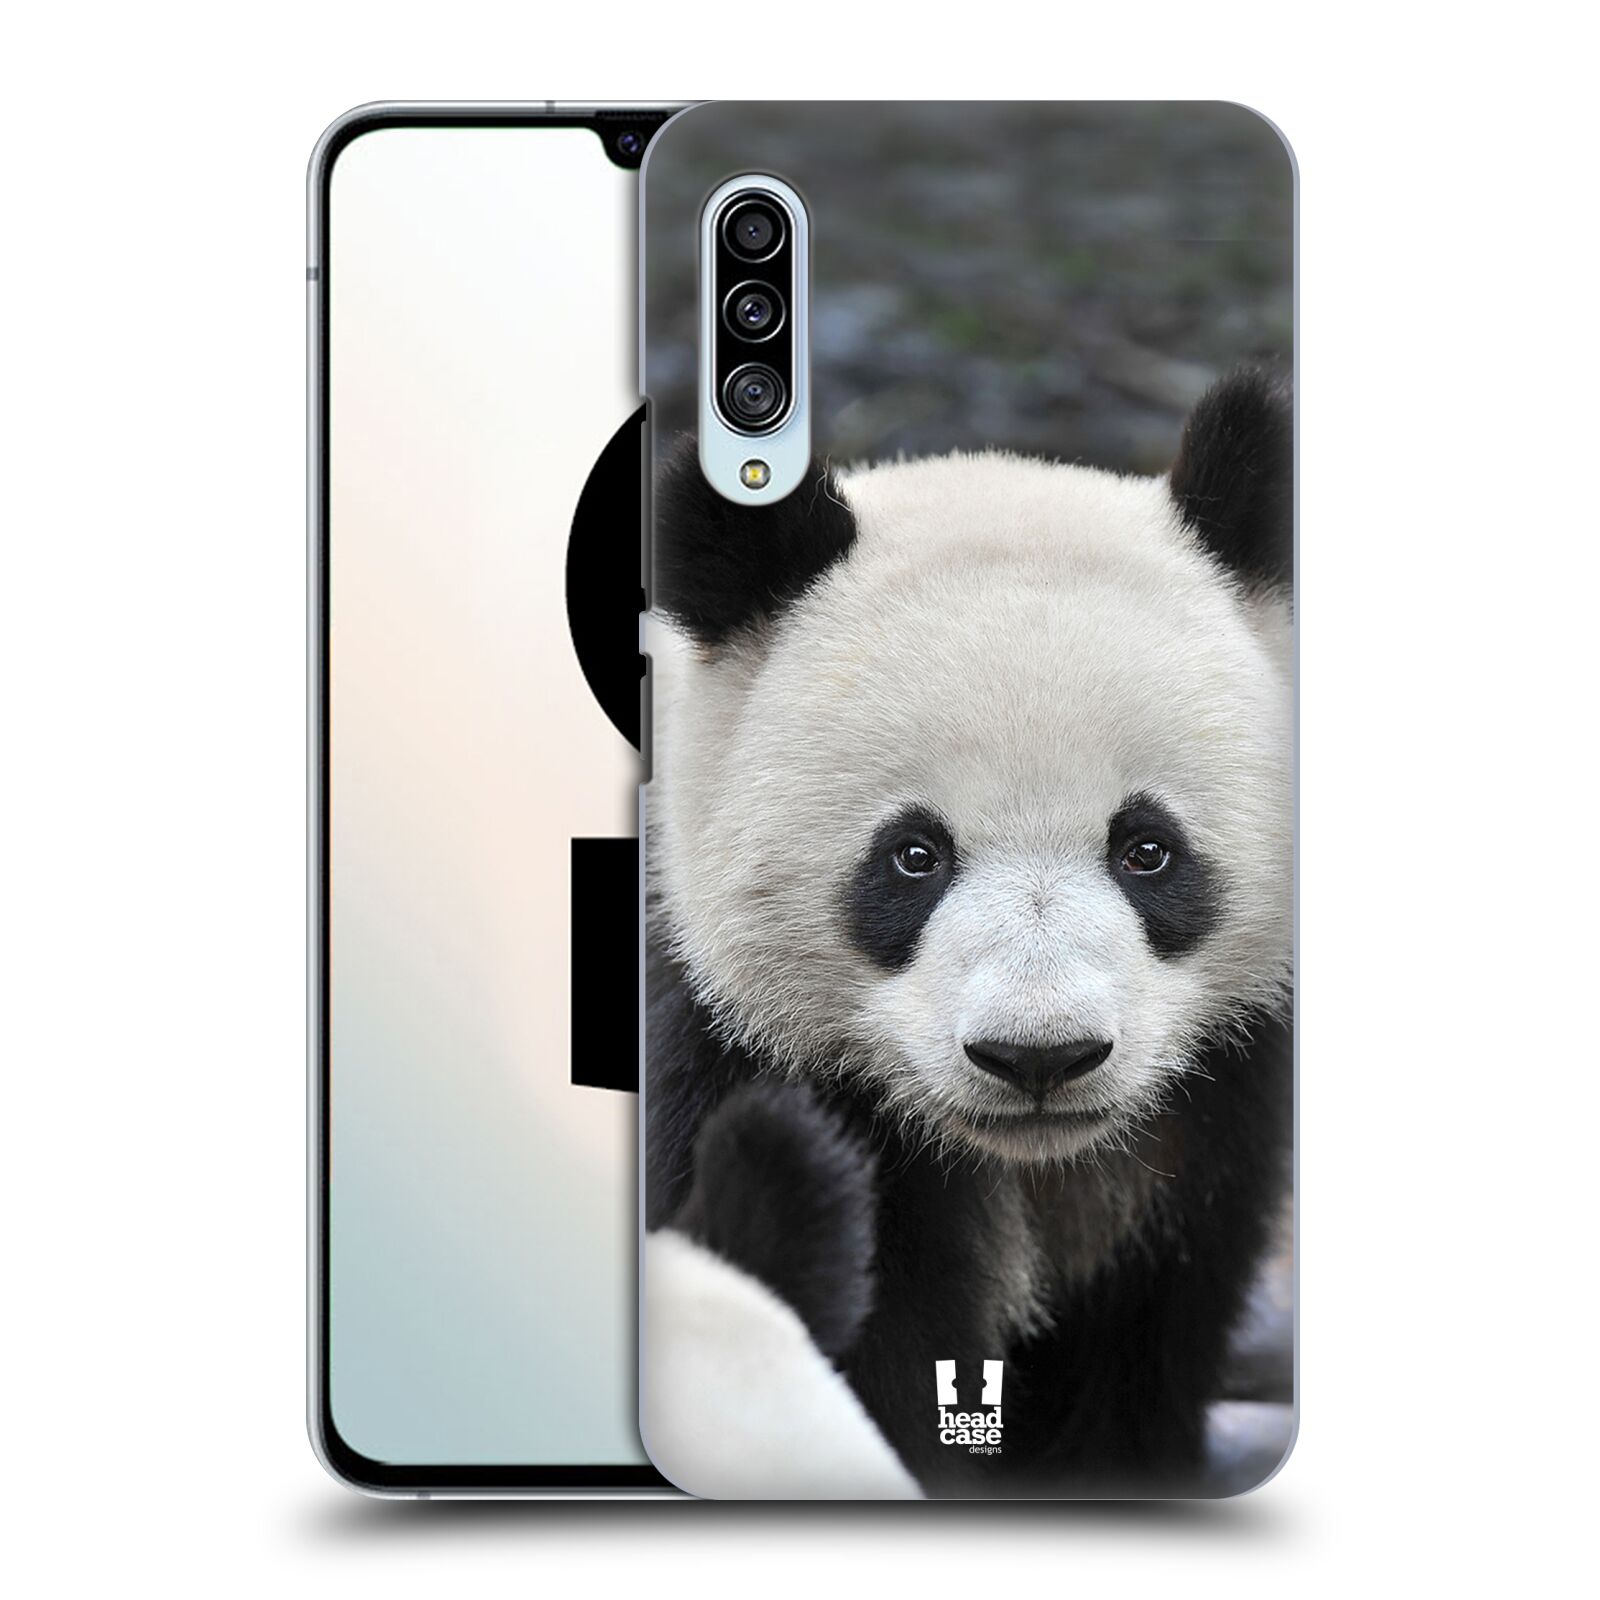 Zadní obal pro mobil Samsung Galaxy A90 5G - HEAD CASE - Svět zvířat medvěd panda